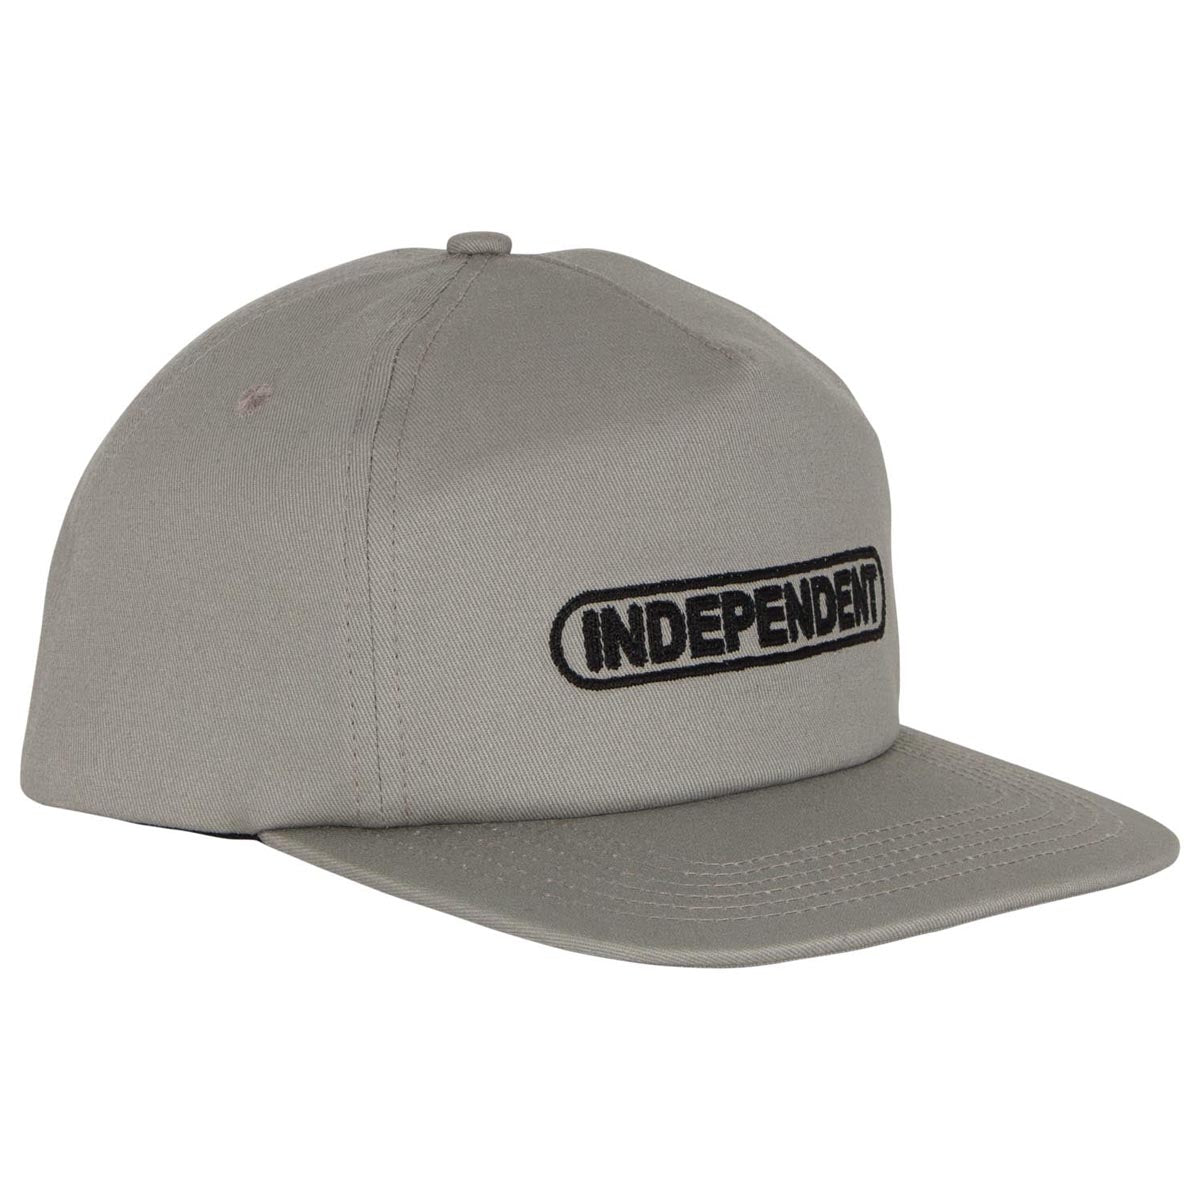 Independent Baseplate Snapback Hat - Grey image 3